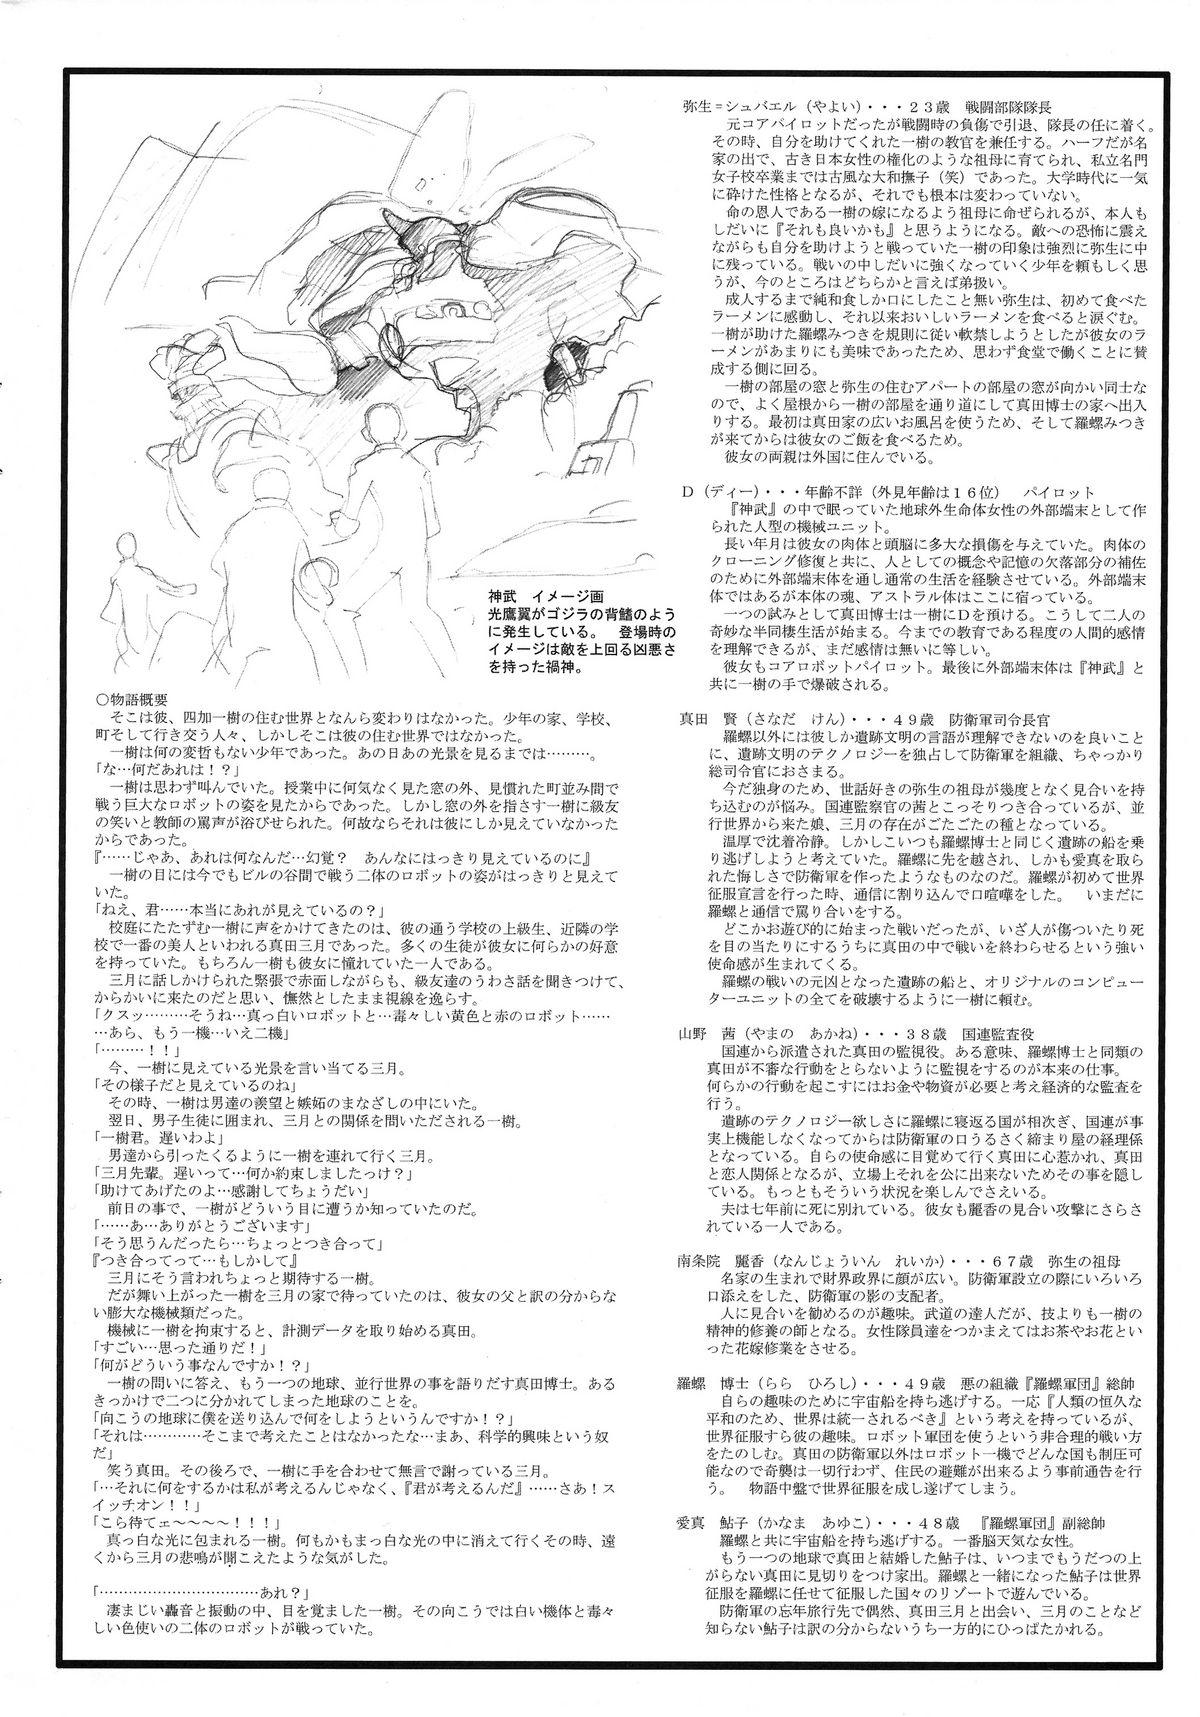 Omatsuri Zenjitsu no Yoru Heisei Ban 3 5